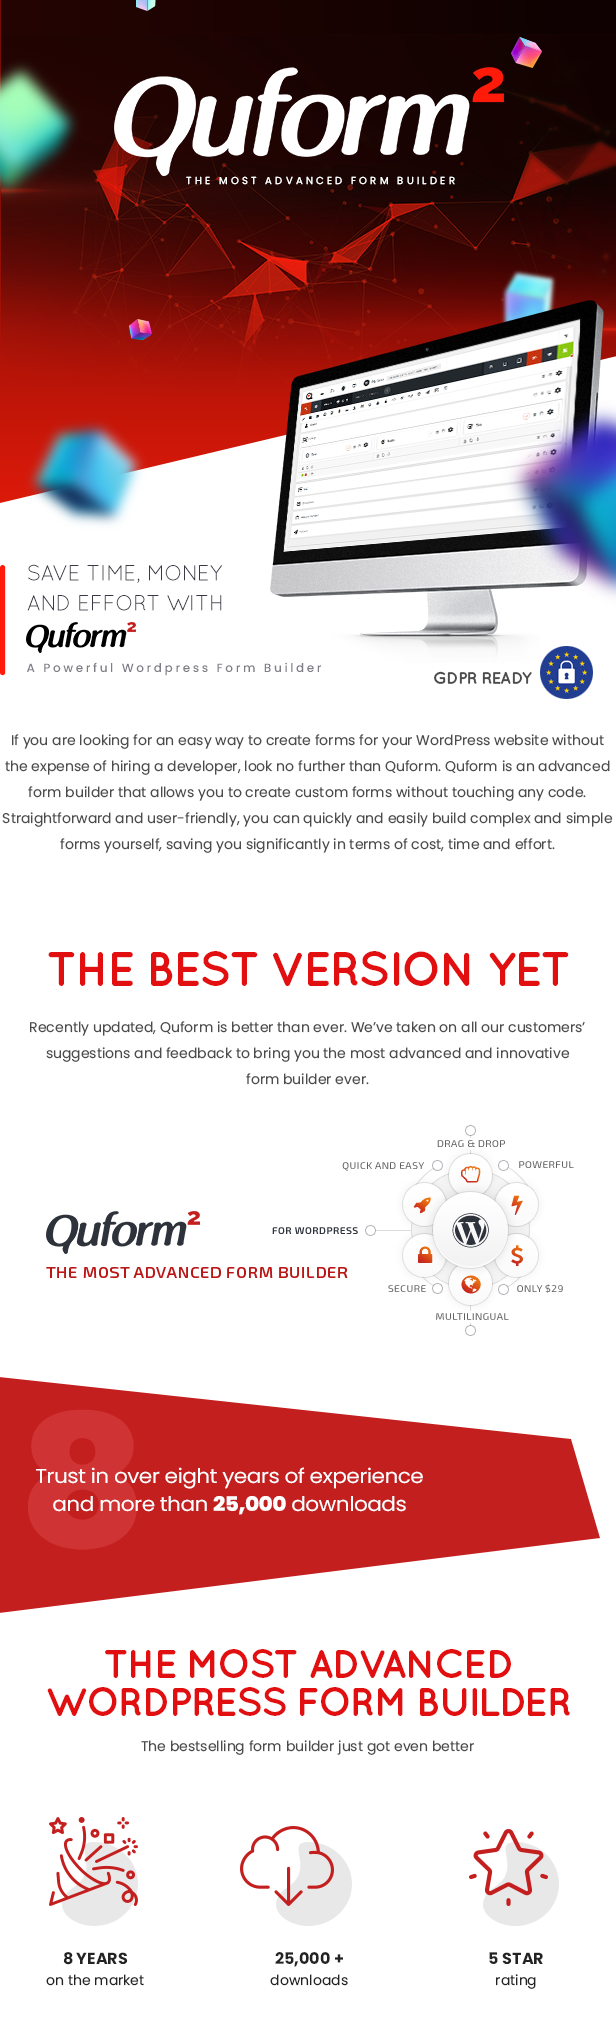 Quform 2 features intro